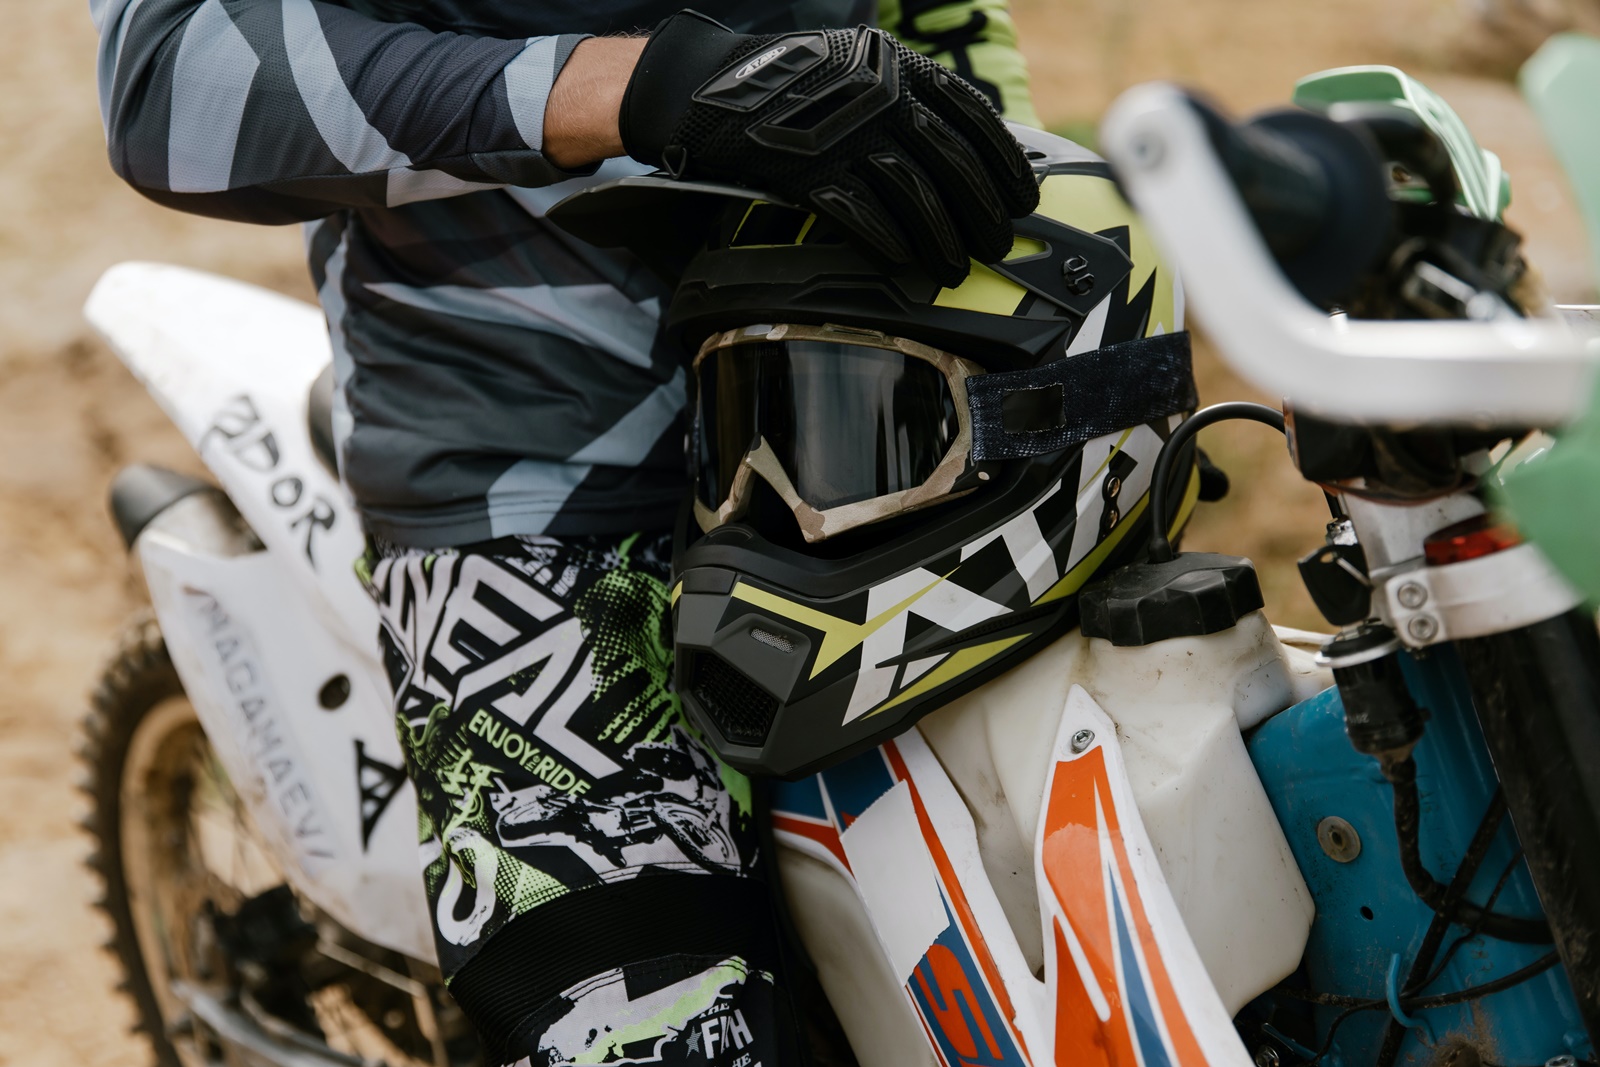 5χρονος Γιάννενα – motocross: Αγωνία για τον σοβαρό τραυματισμό αγοριού σε πίστα